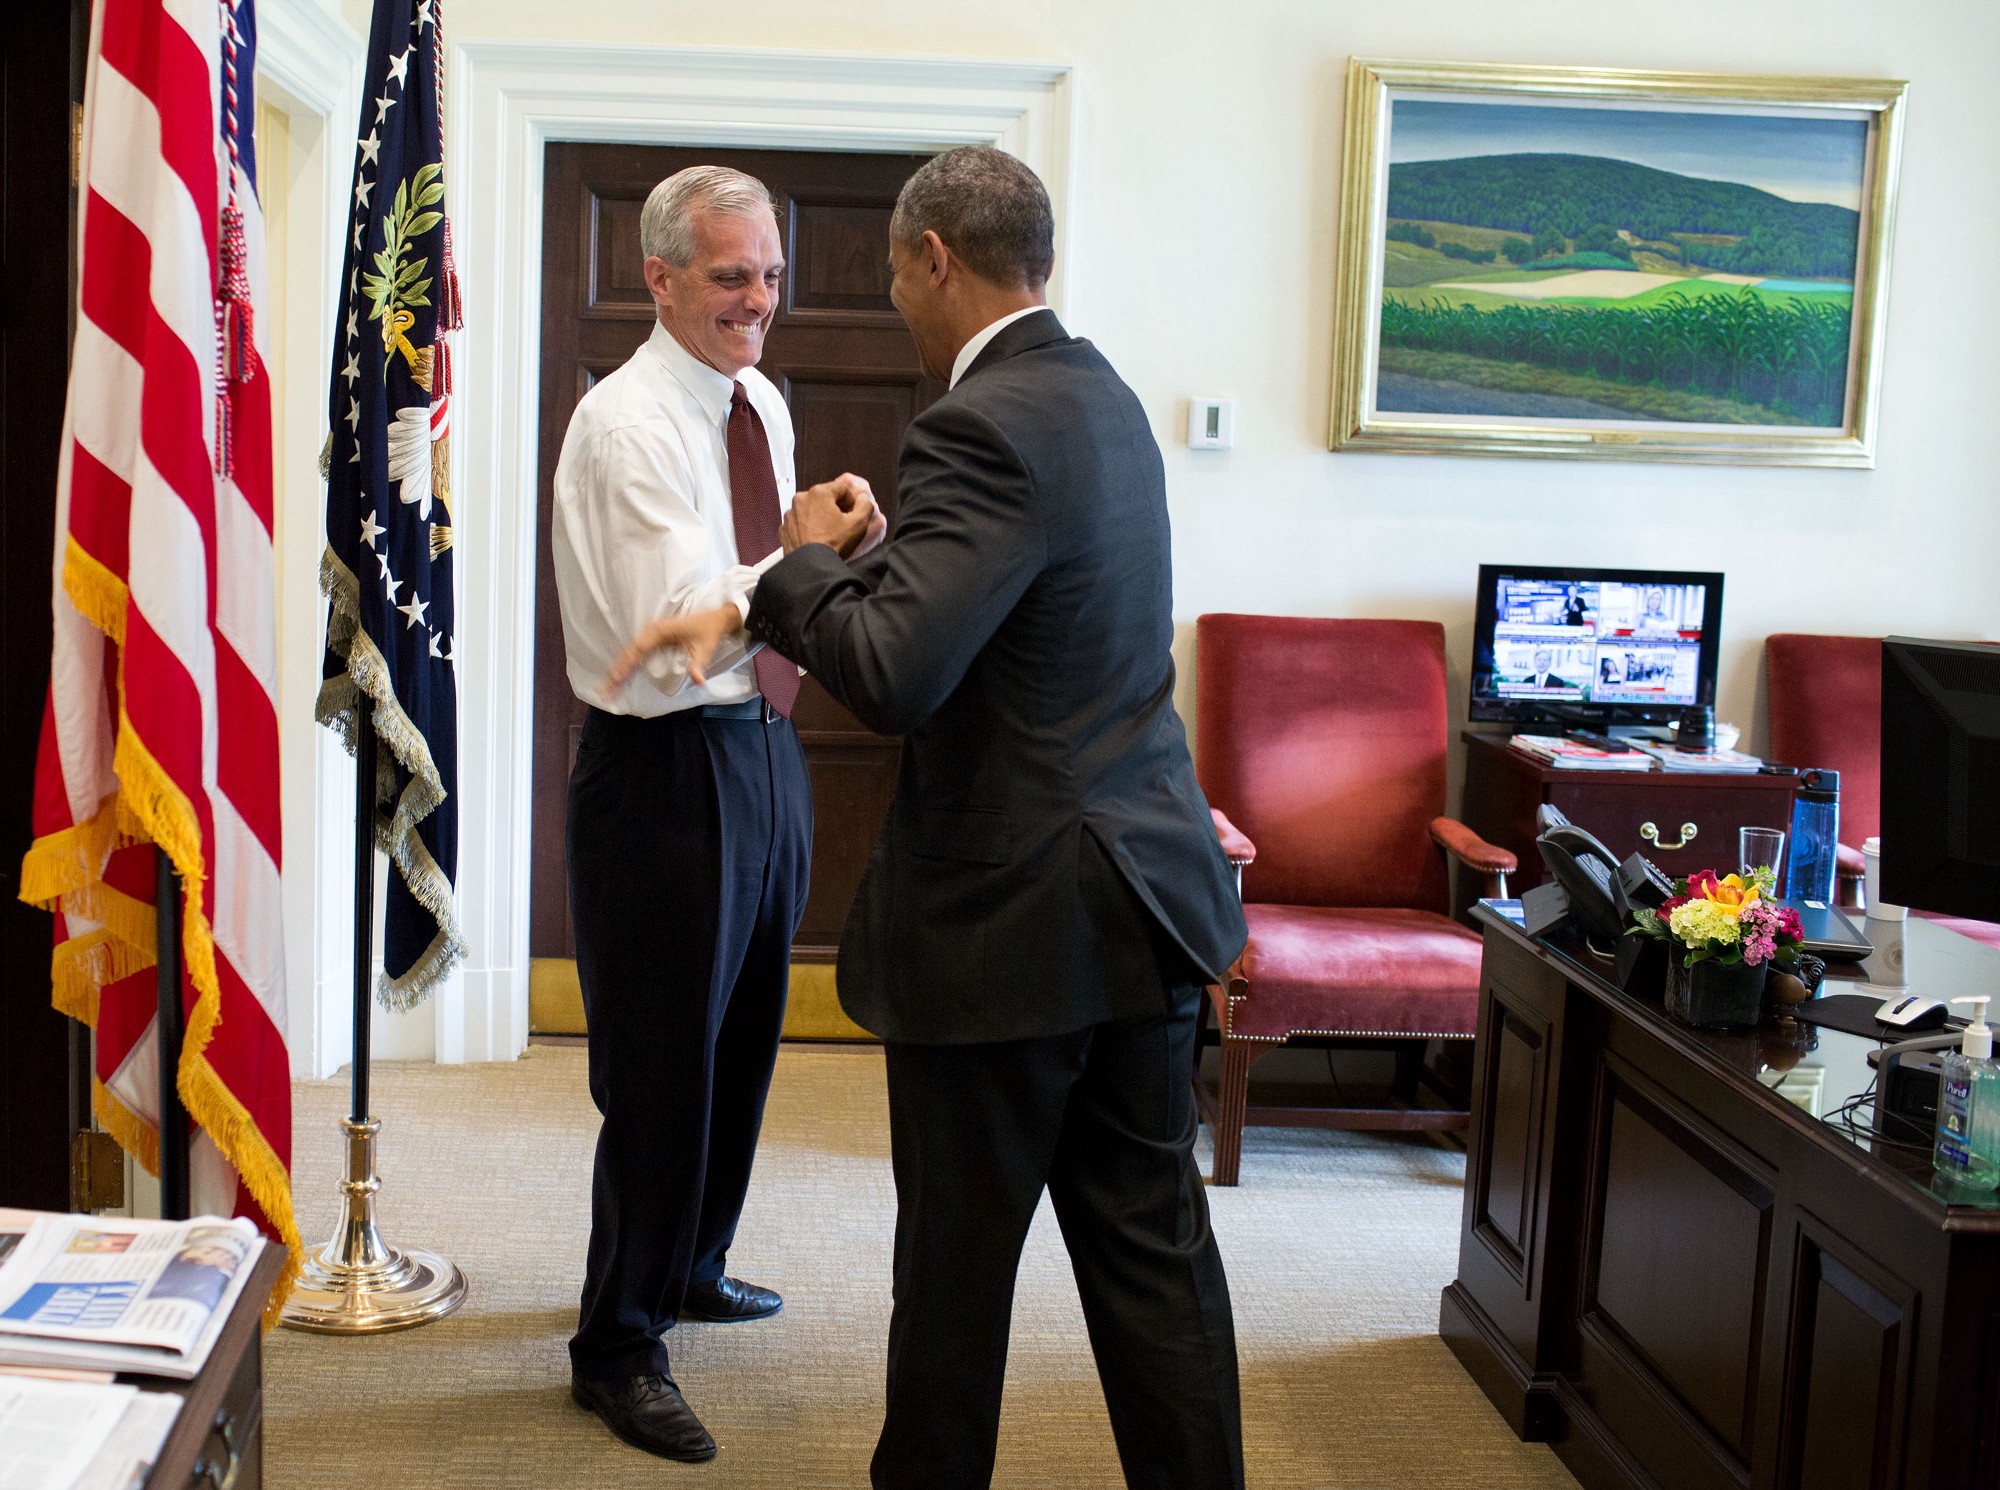 McDonough congratulates the President. (Official White House Photo by Pete Souza)